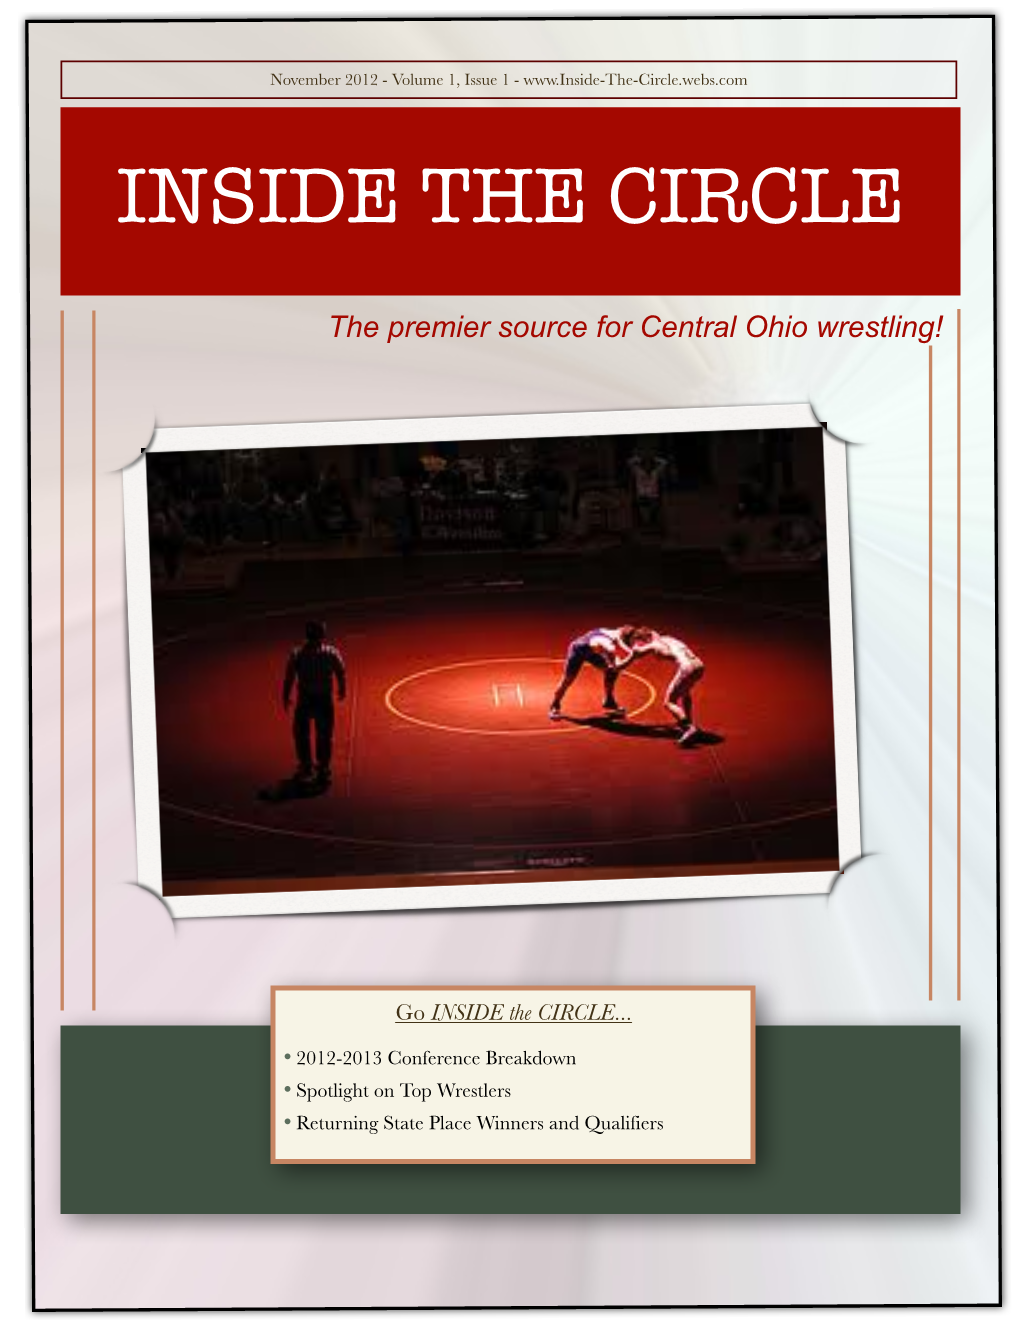 Inside the Circle V. 1, I. 1